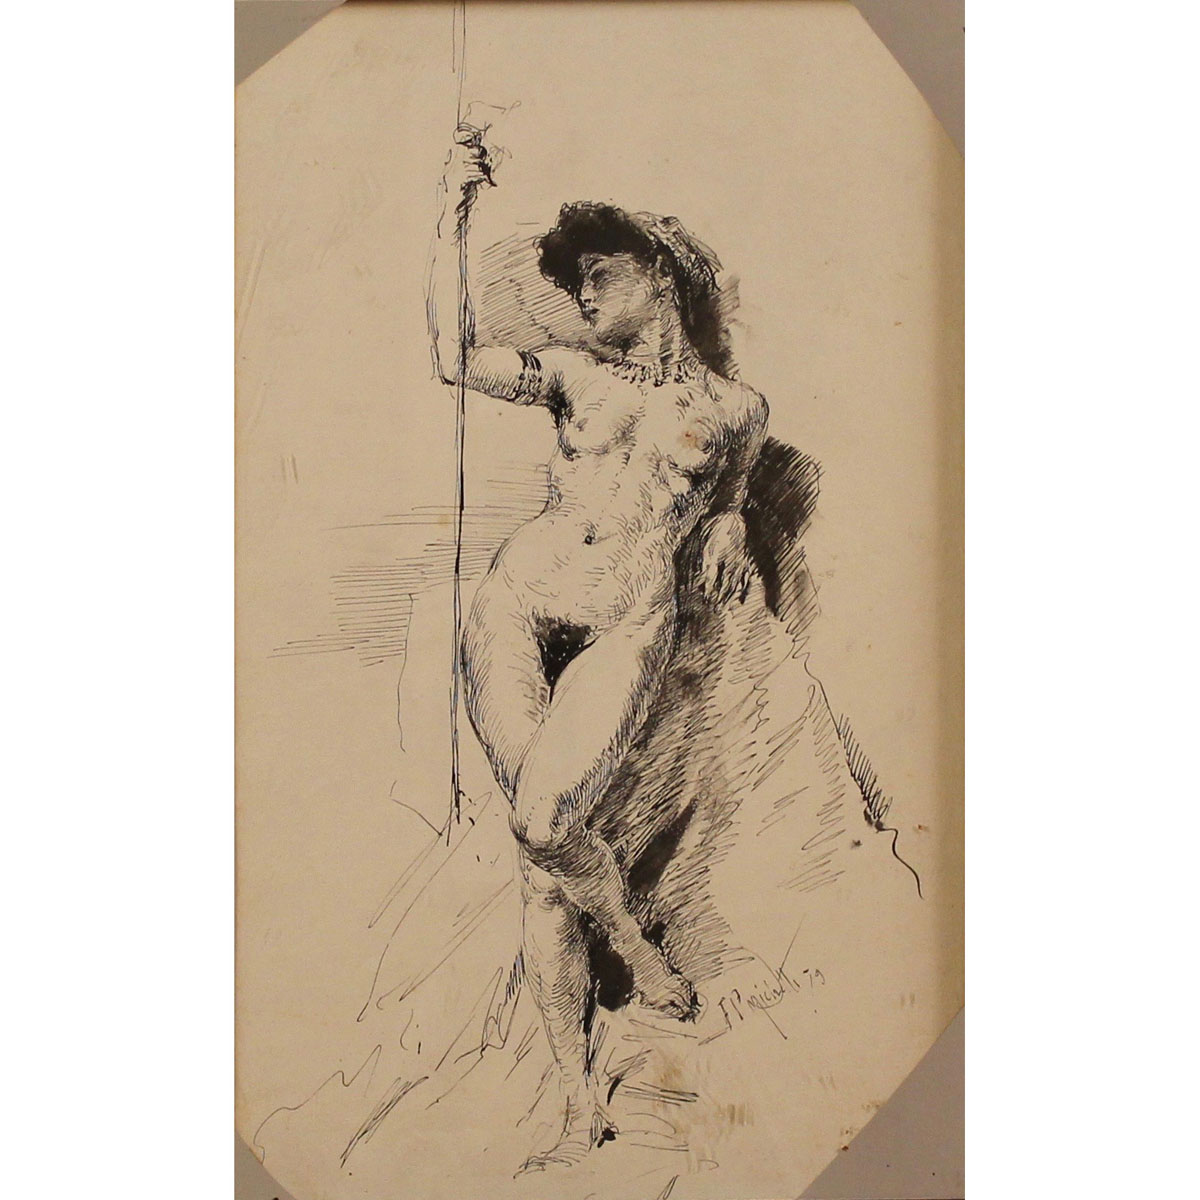 FRANCESCO PAOLO MICHETTI (1851-1929) “Nudi femminili – studi“